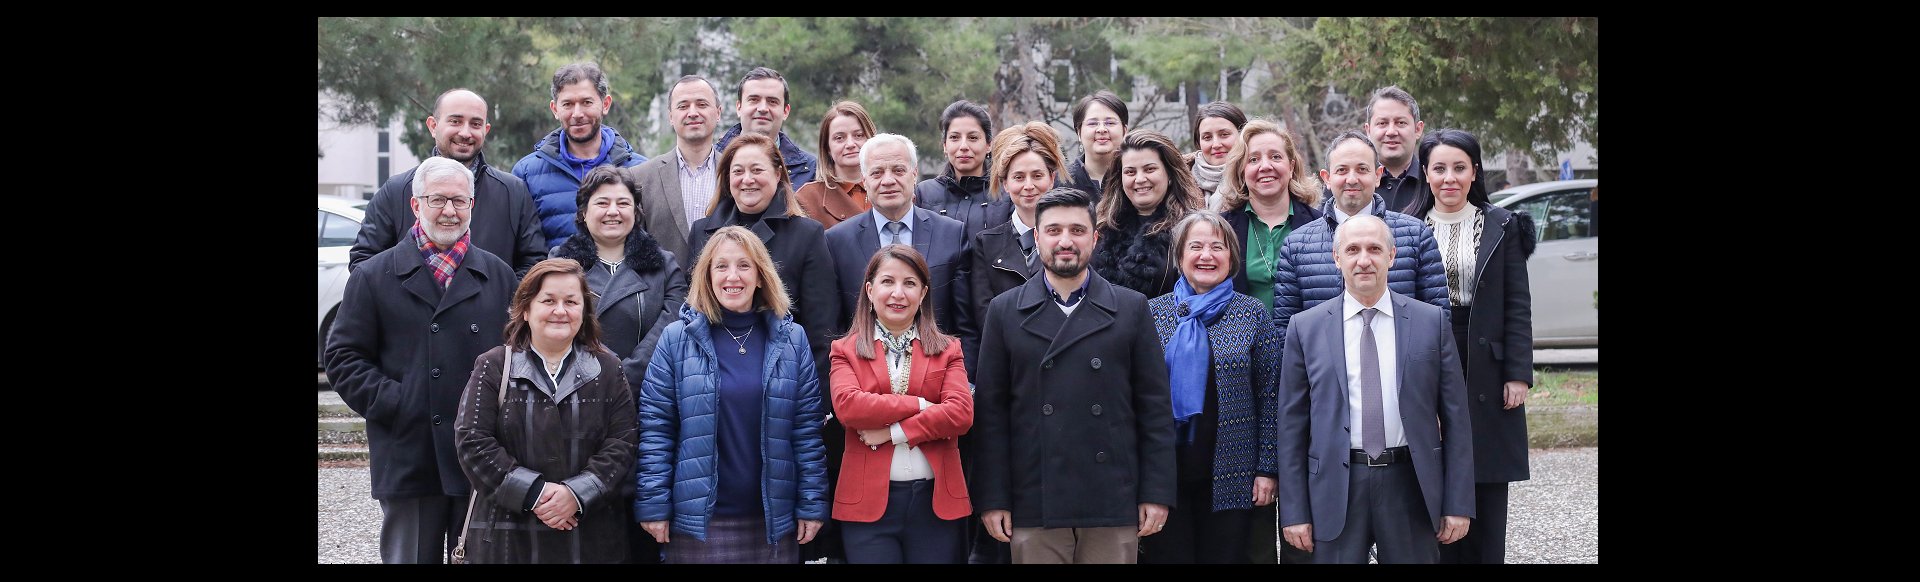  Bursa Uludağ Üniversitesi Mühendislik Fakültesi Tekstil Mühendisliği Bölümü Tanıtım Videosu 